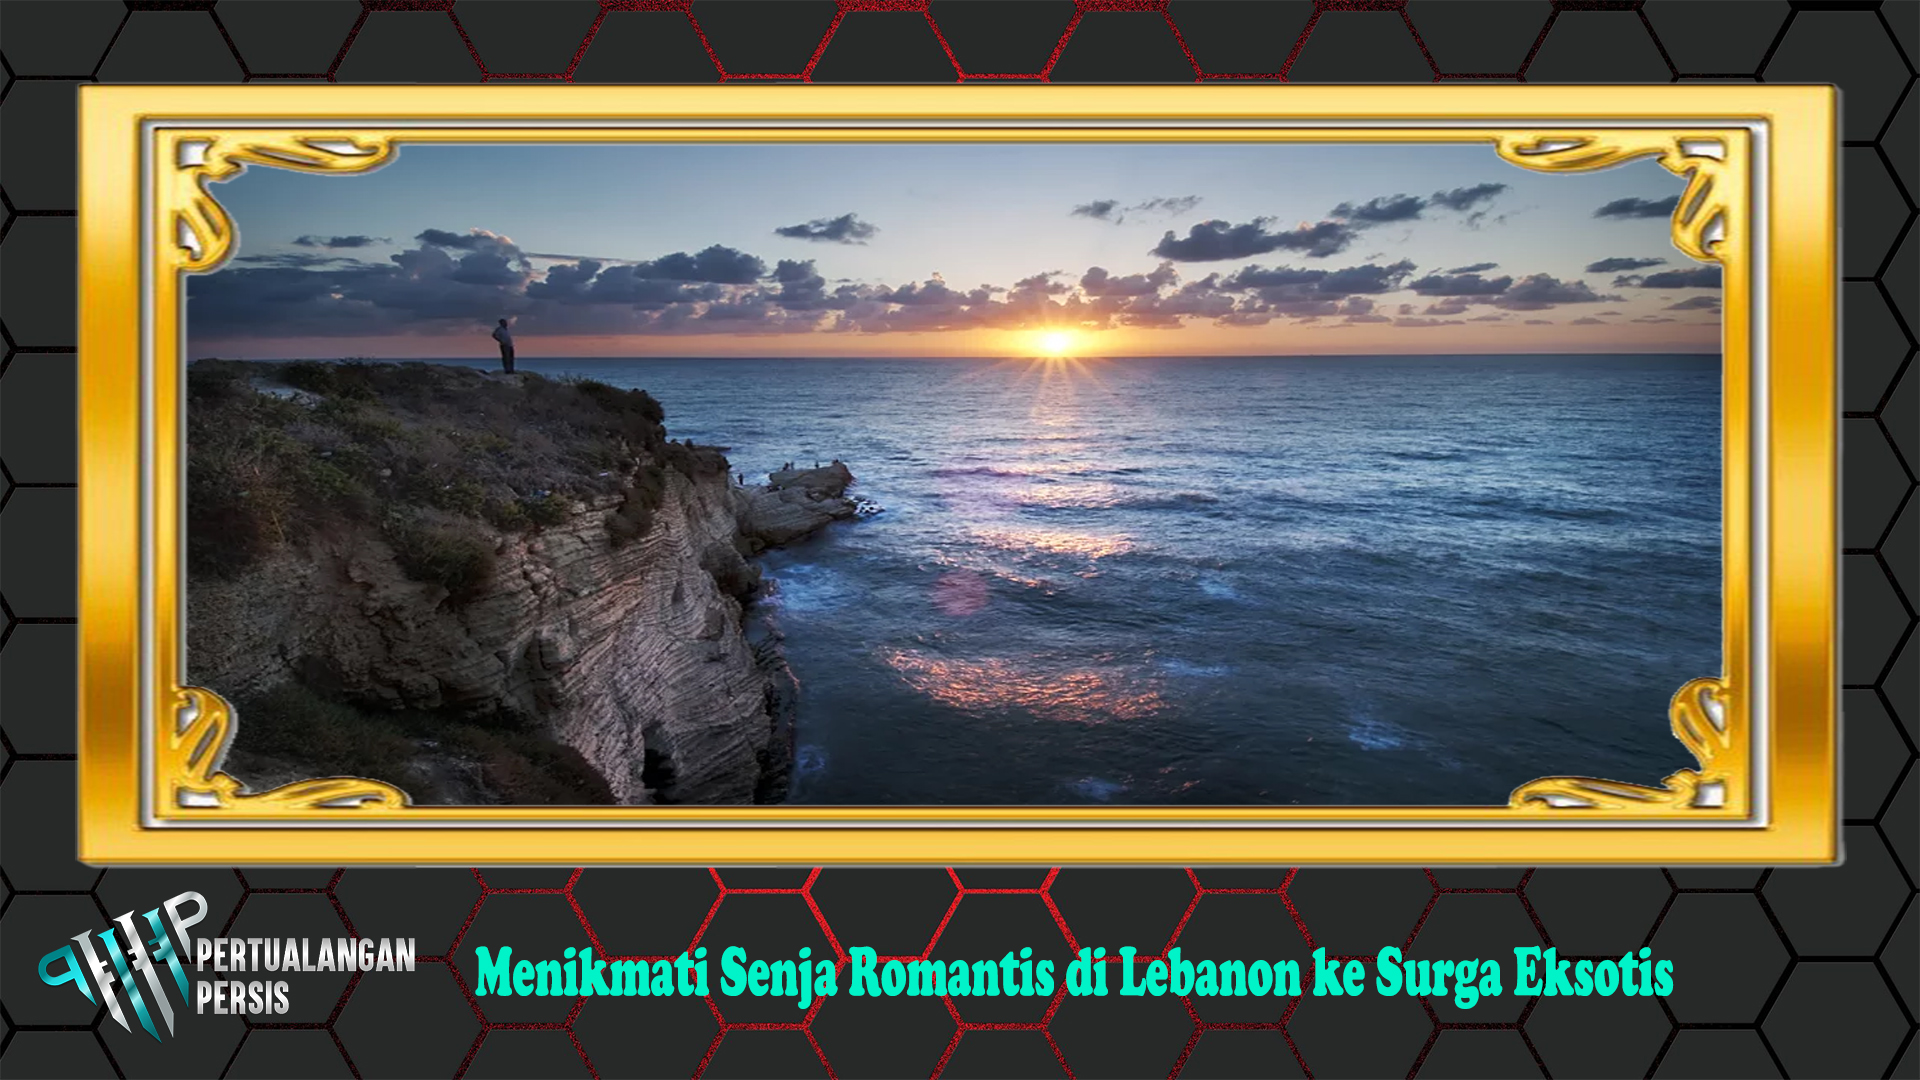 Menikmati Senja Romantis di Lebanon ke Surga Eksotis